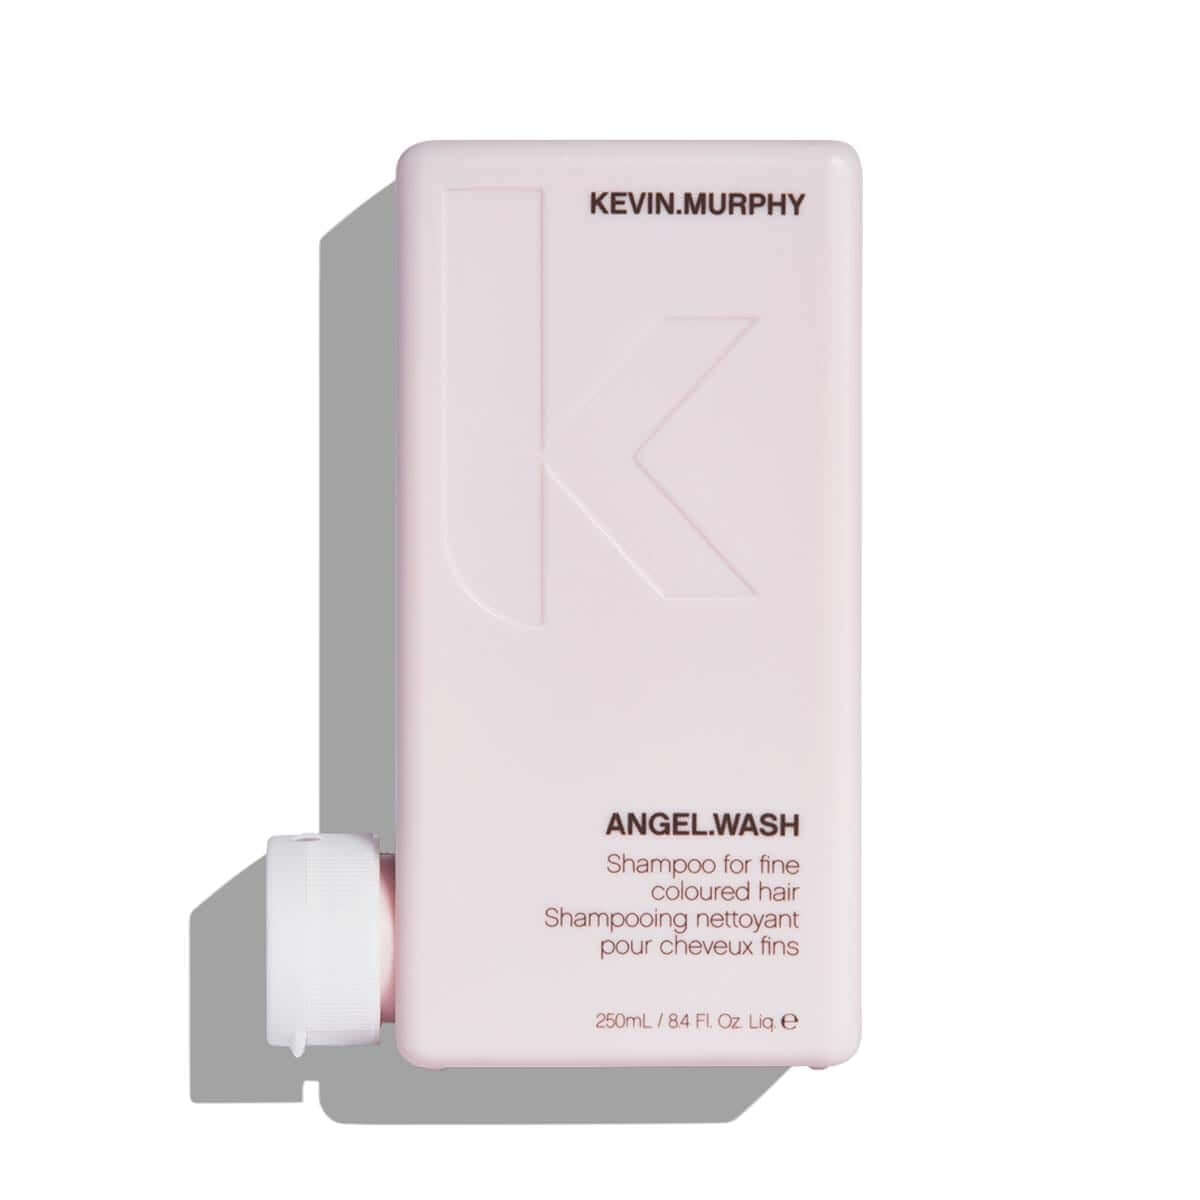 Kevin.Murphy Angel.Wash shampoo 8.4 oz / 250mL.